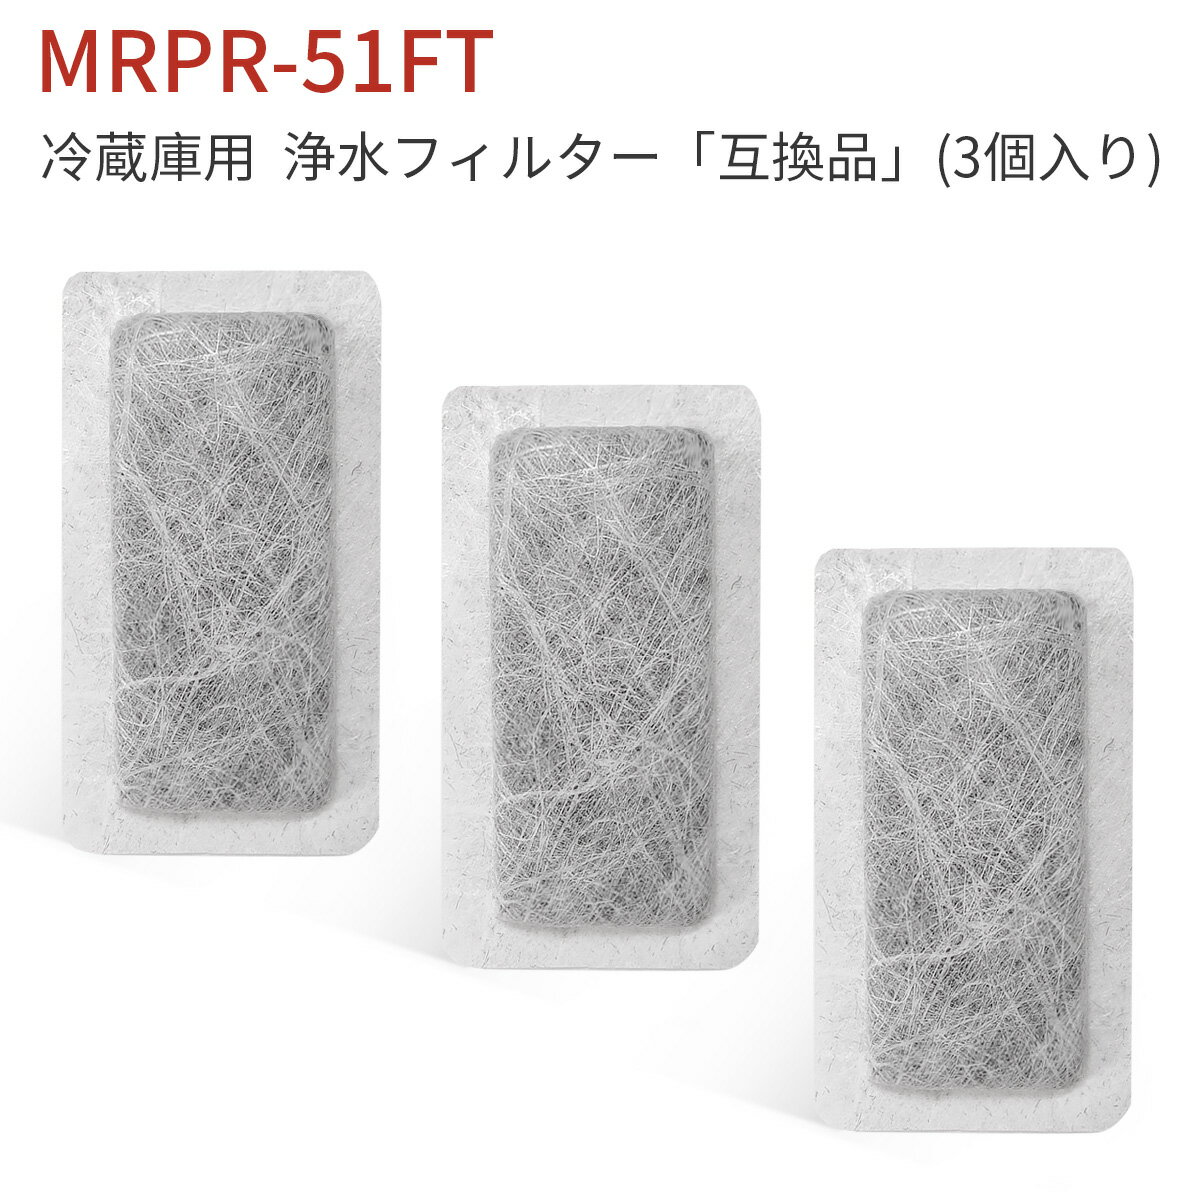 MRPR-51FT 冷蔵庫 自動製氷用 浄水フィルター mrpr-51ft 三菱 冷凍冷蔵庫 製氷機フィルター (互換品/3個入り) 1